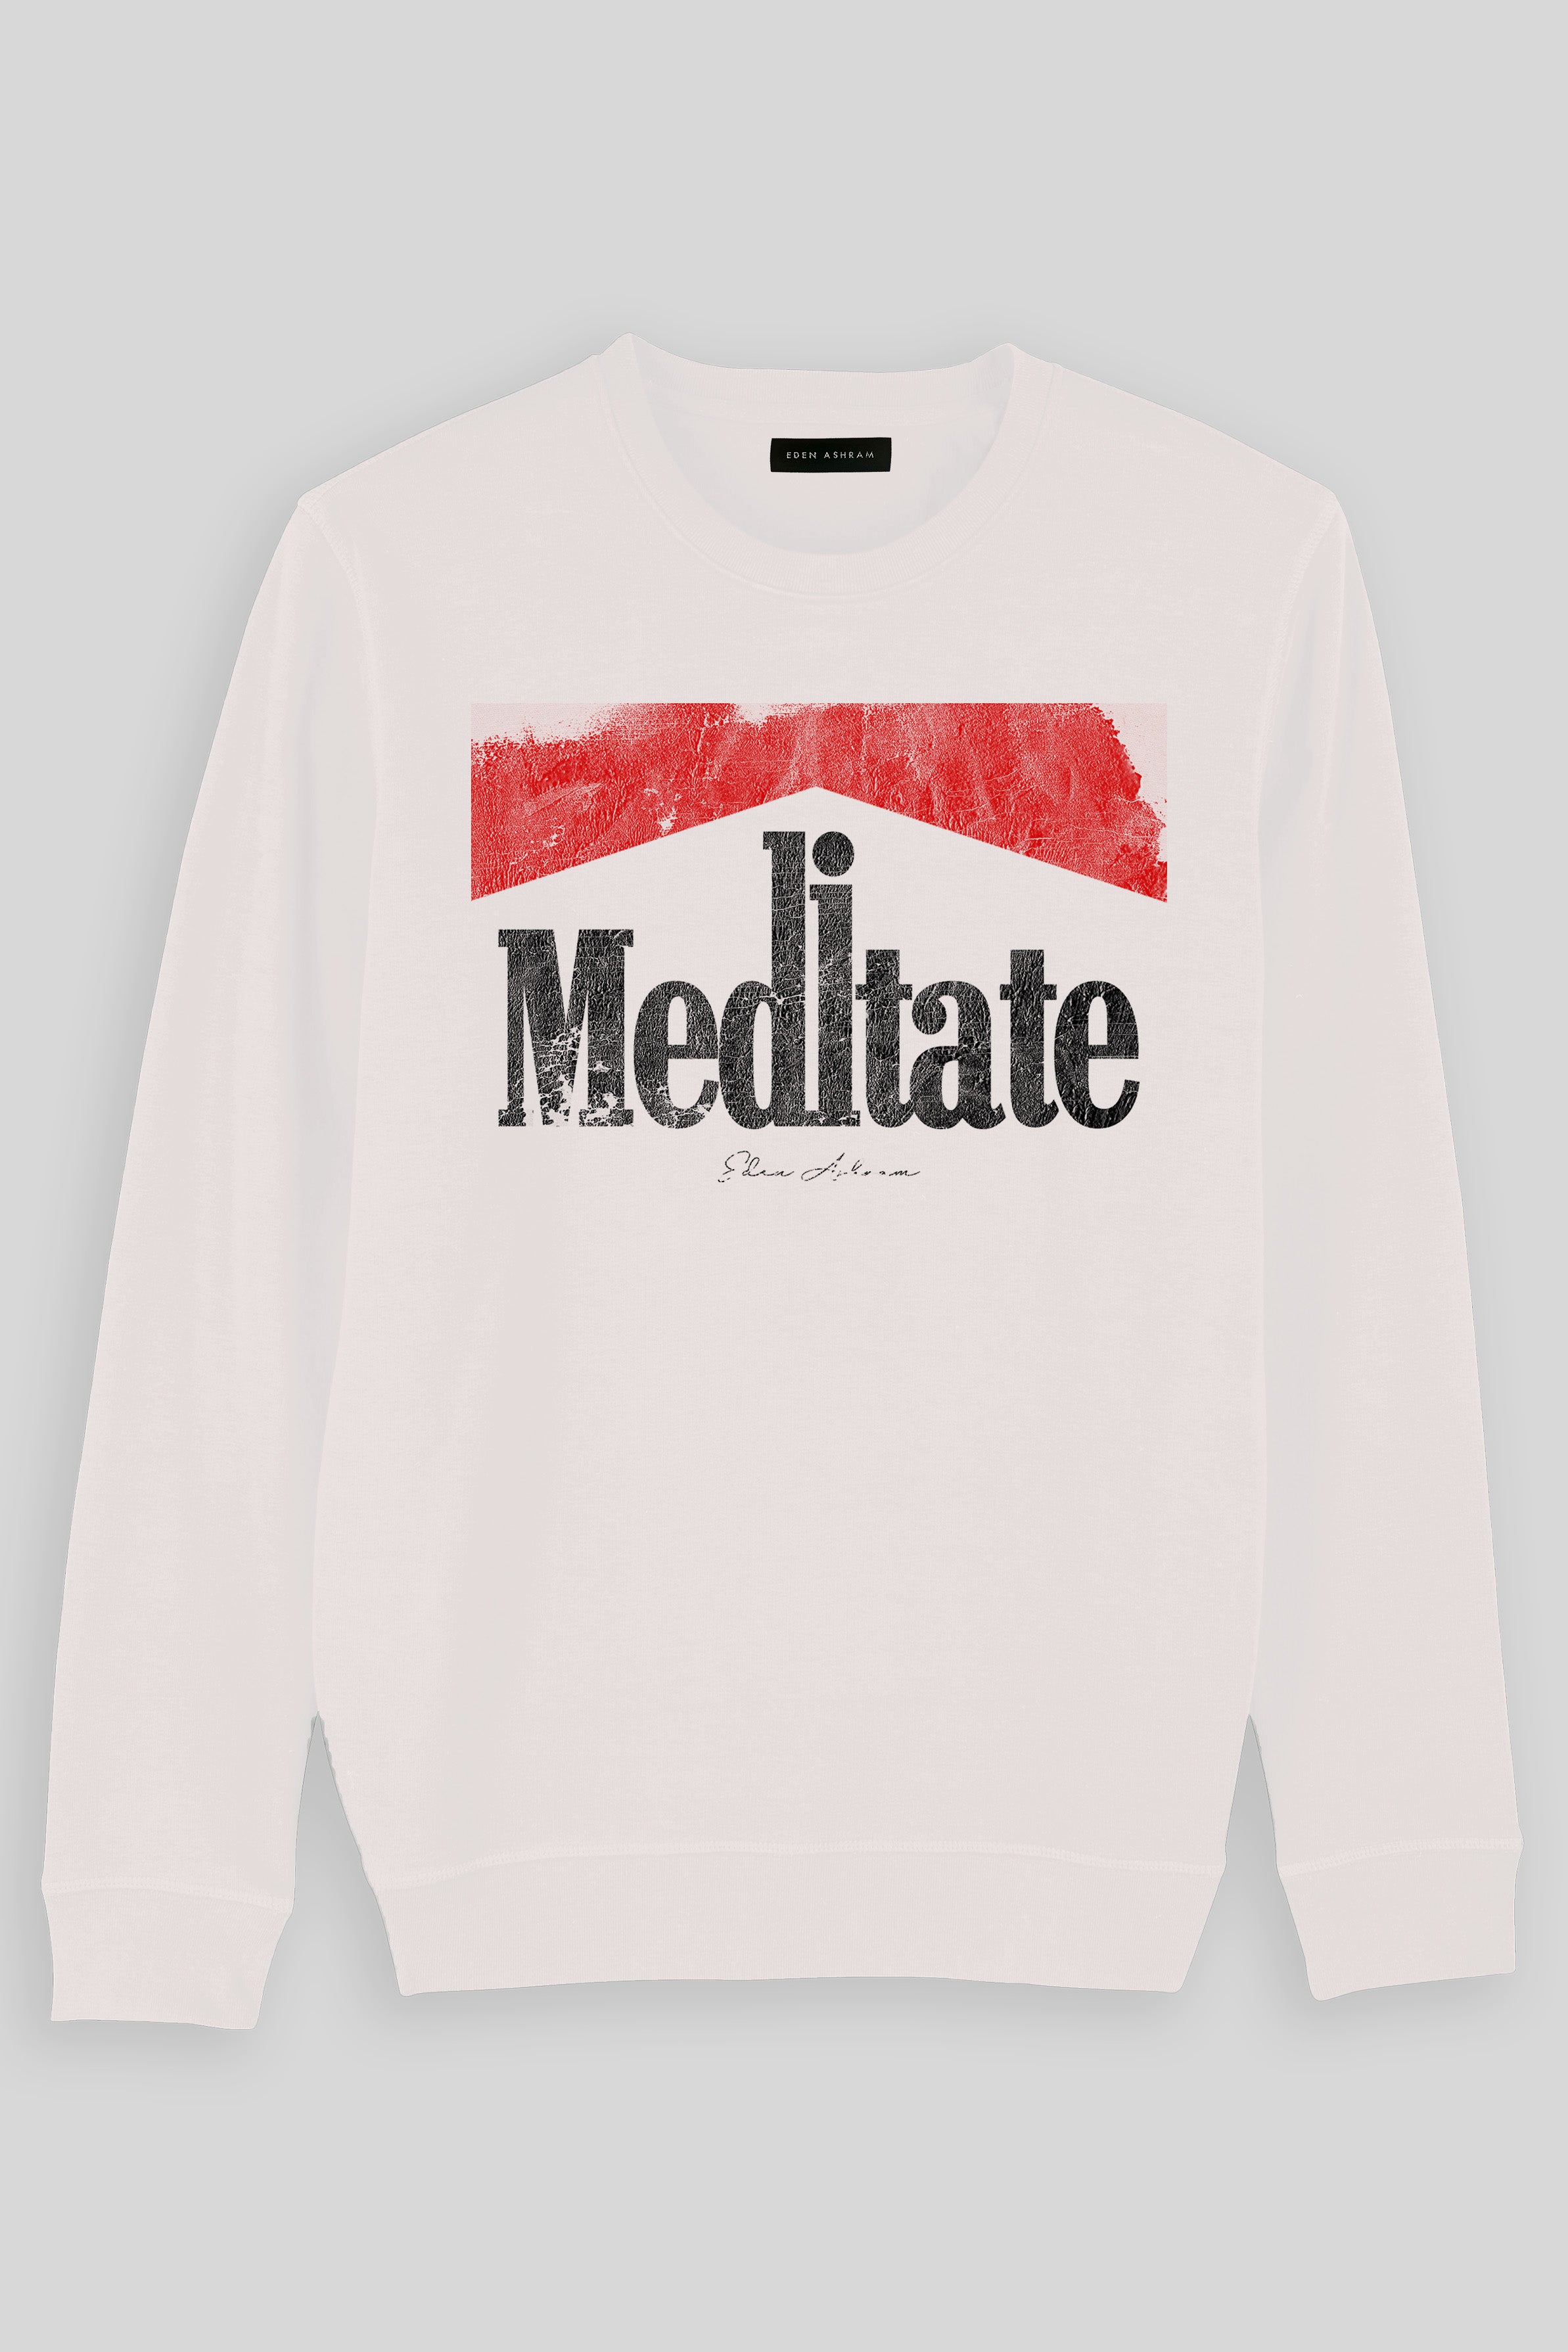 Eden Ashram Meditate 2.0 Premium Crew Neck Sweatshirt Vintage White | Red